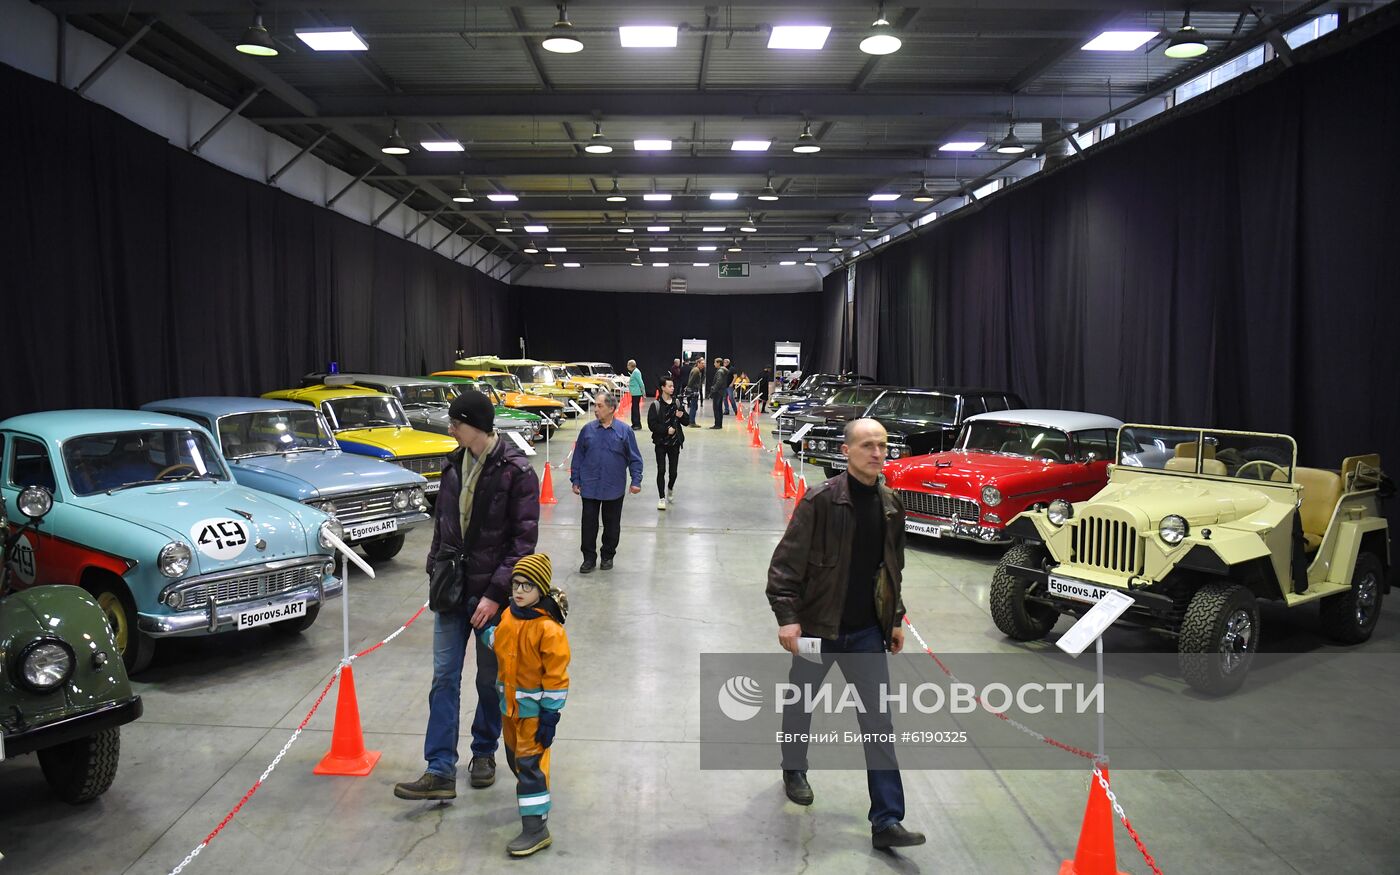 Открытие выставки ретро-автомобилей "Олдтаймер-Галерея"